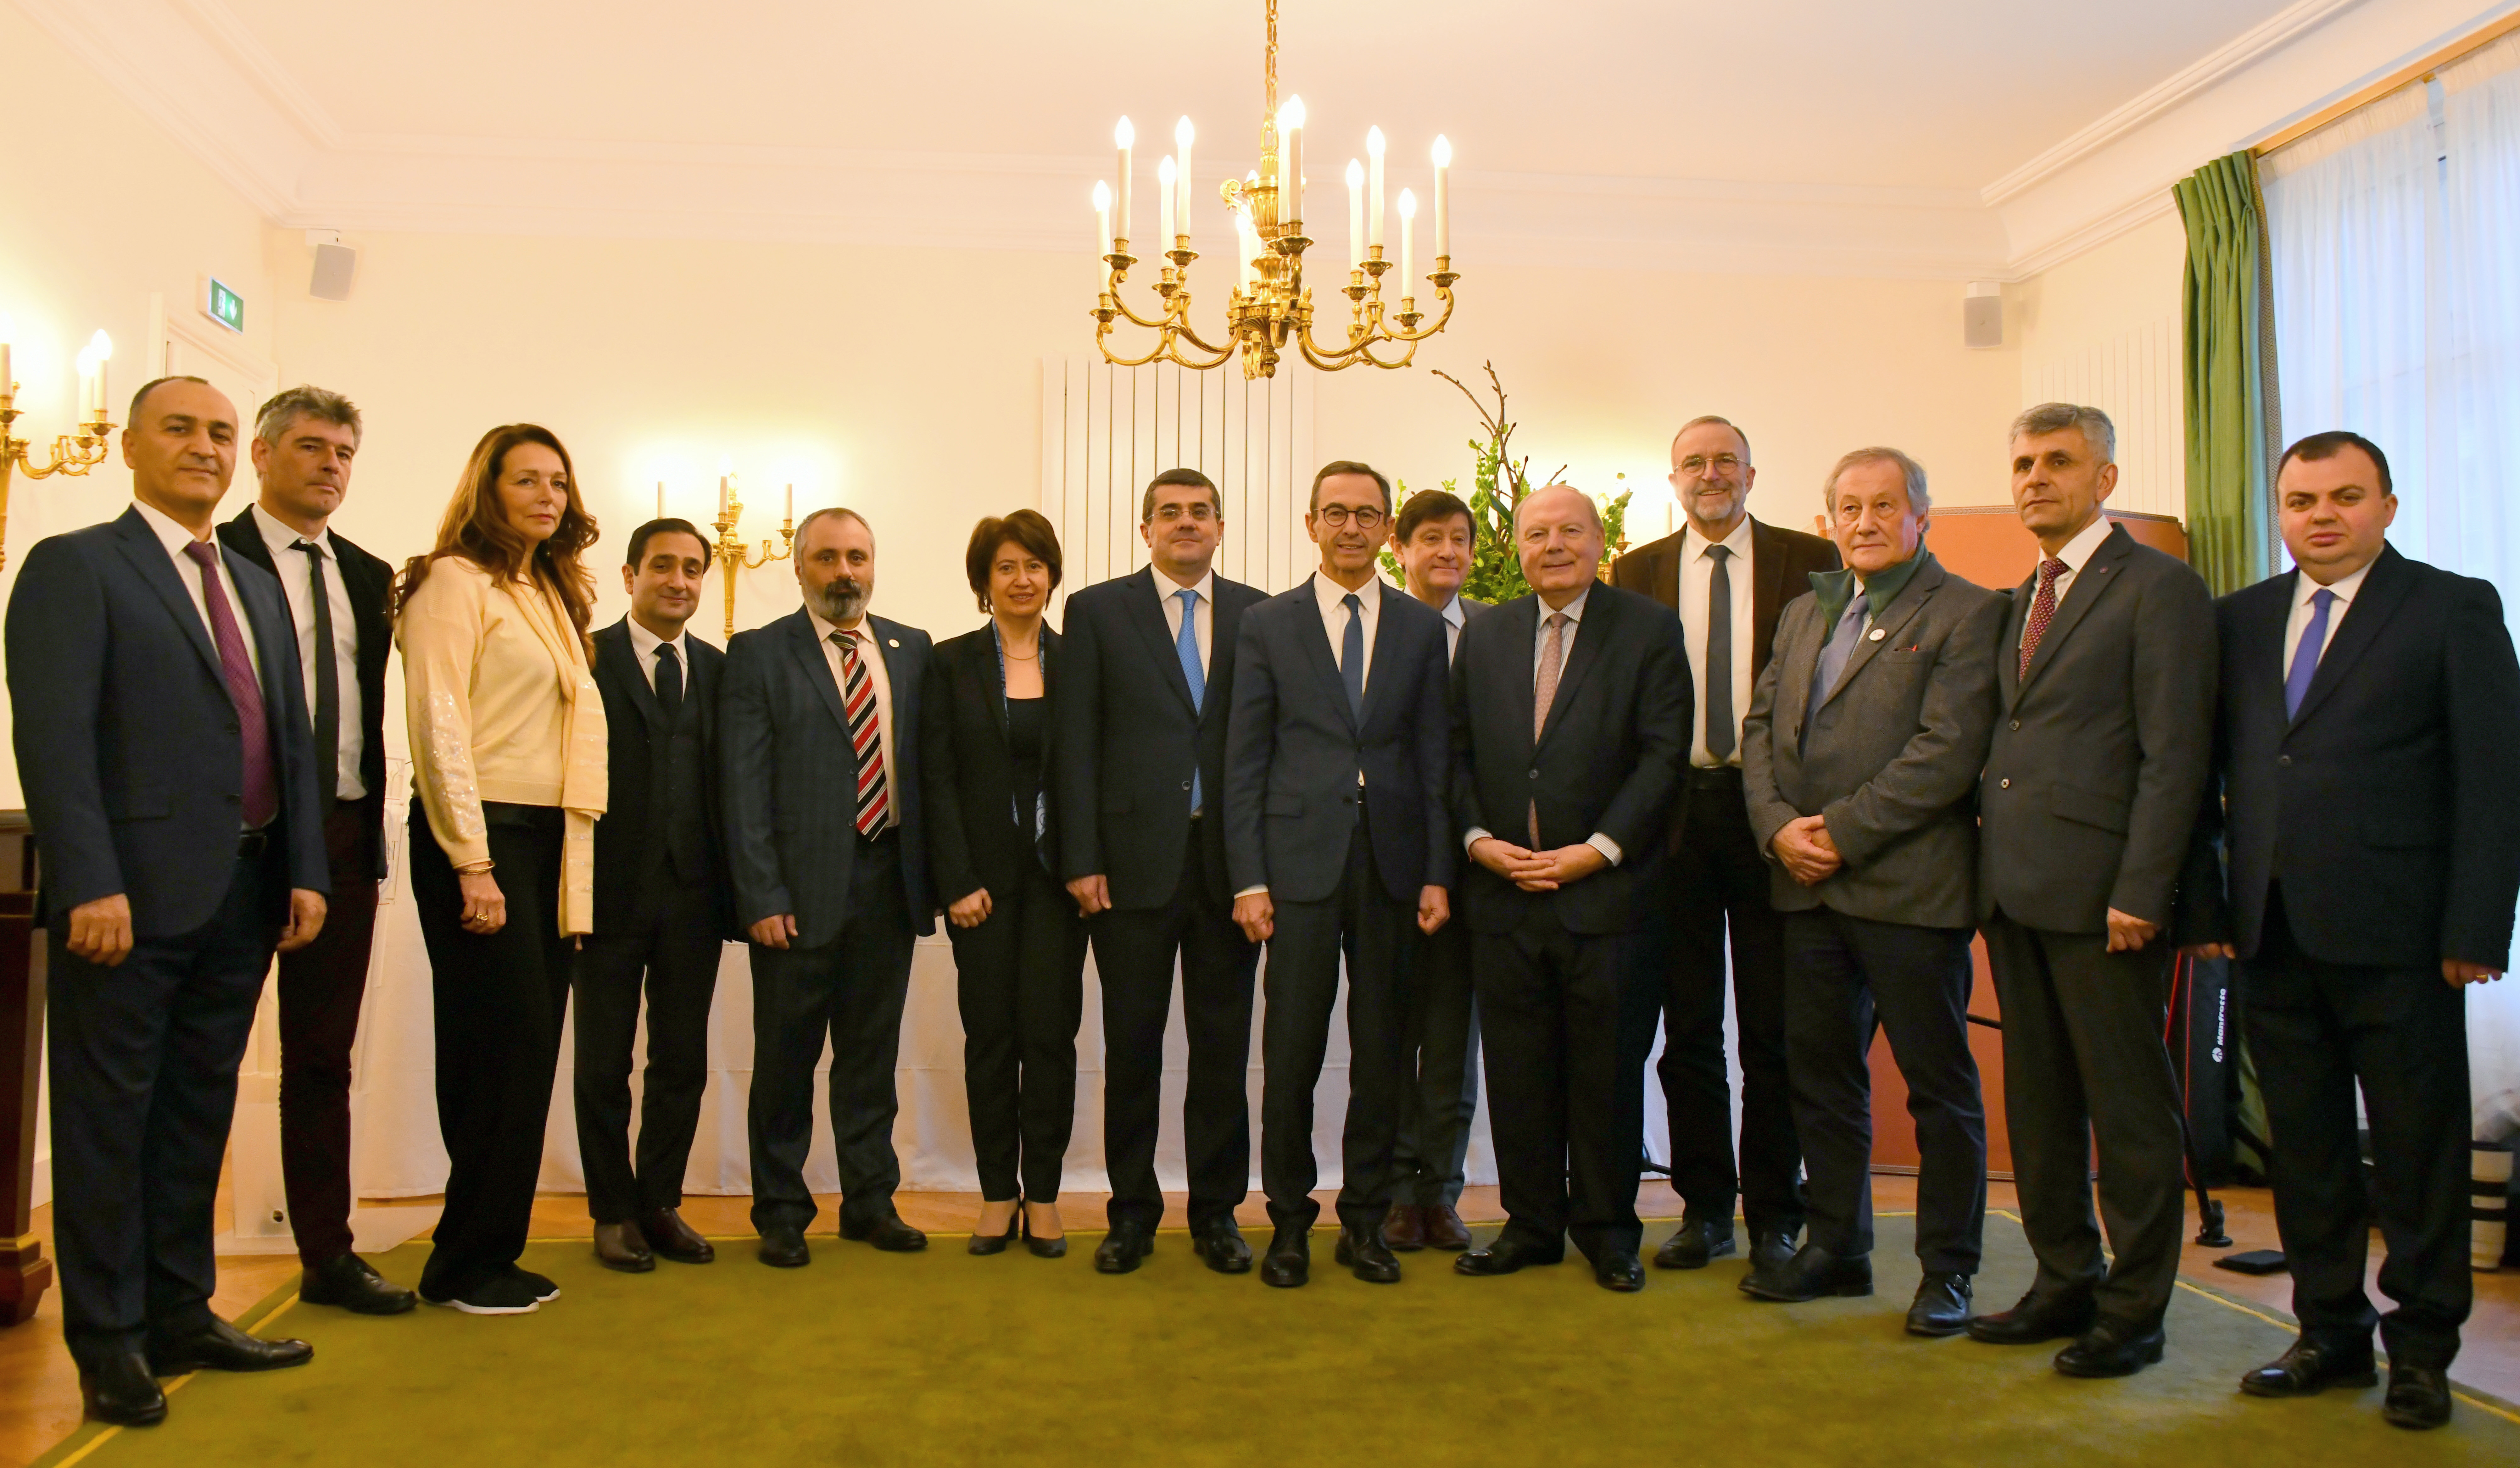 Делегация во главе с президентом Арцаха провела встречи с руководством законодательного собрания Франции в Париже